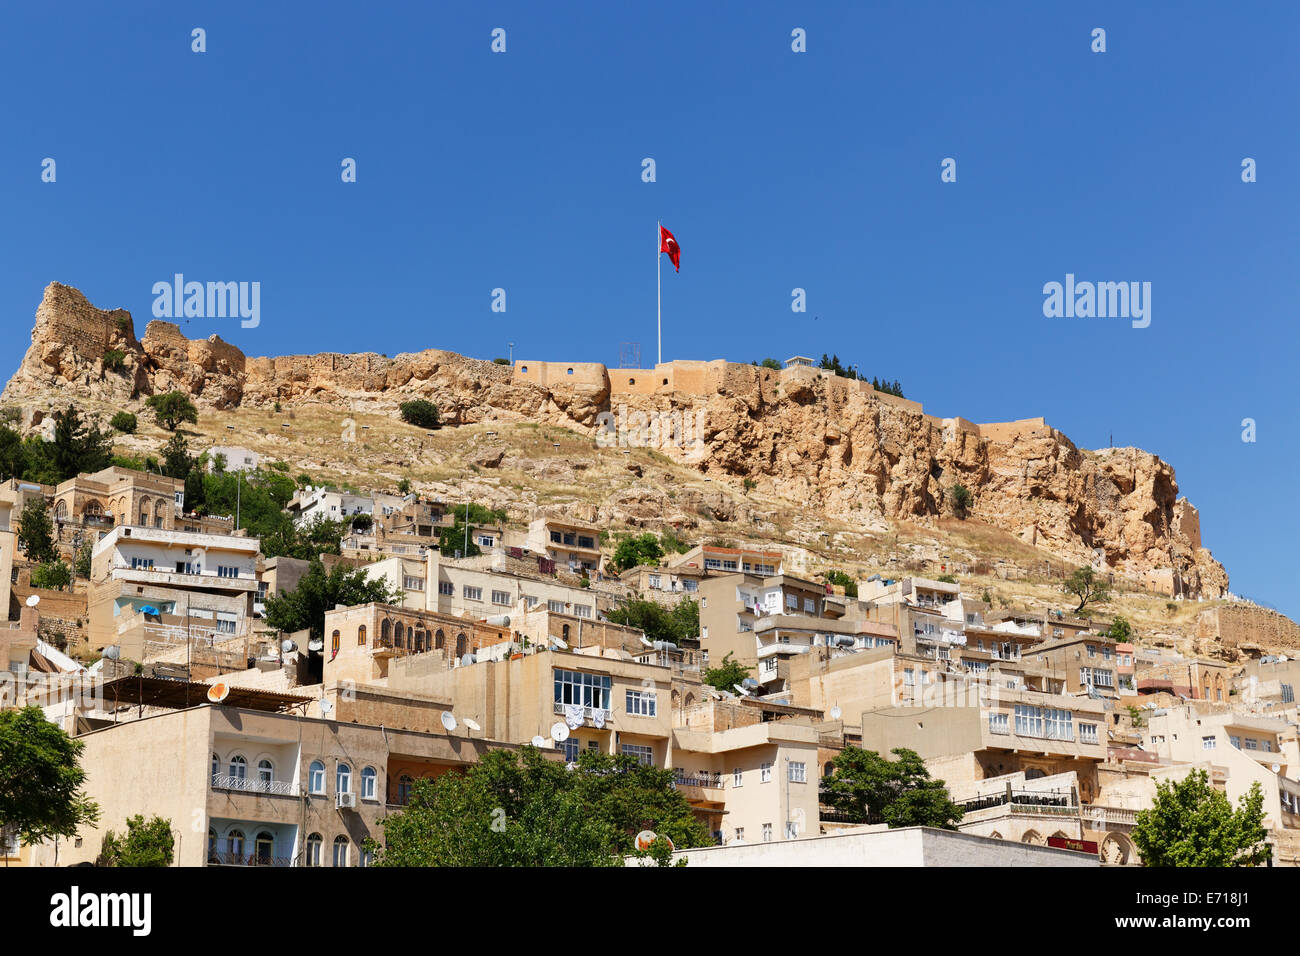 Turkey, Mardin, old town and citadel Stock Photo